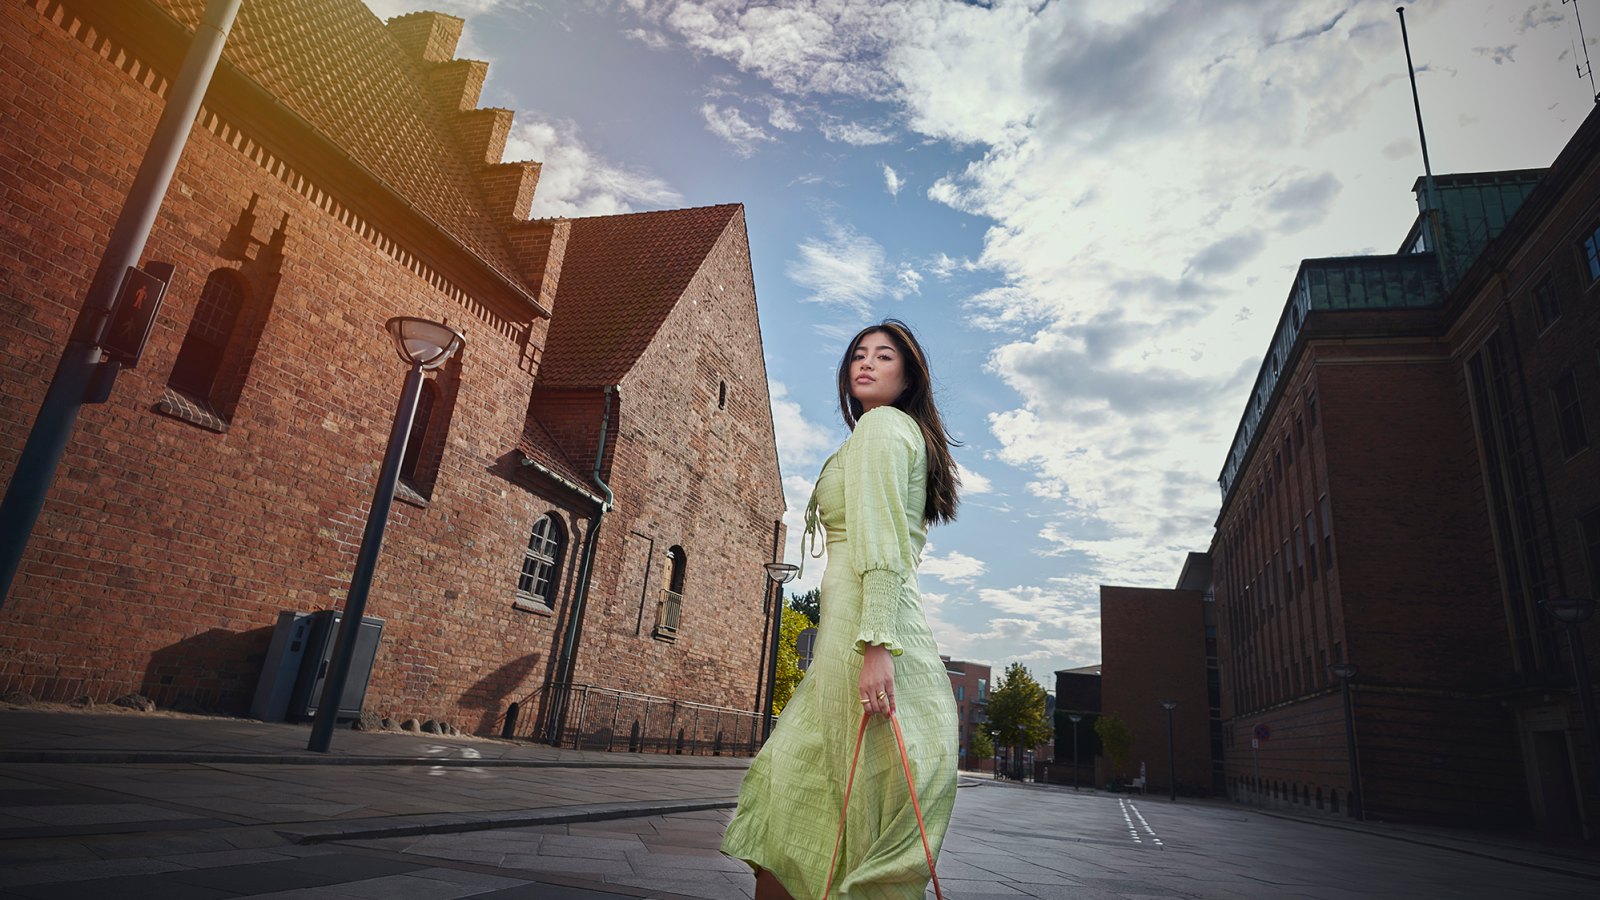 Model outdoors in city / street. Woman in green dress walking